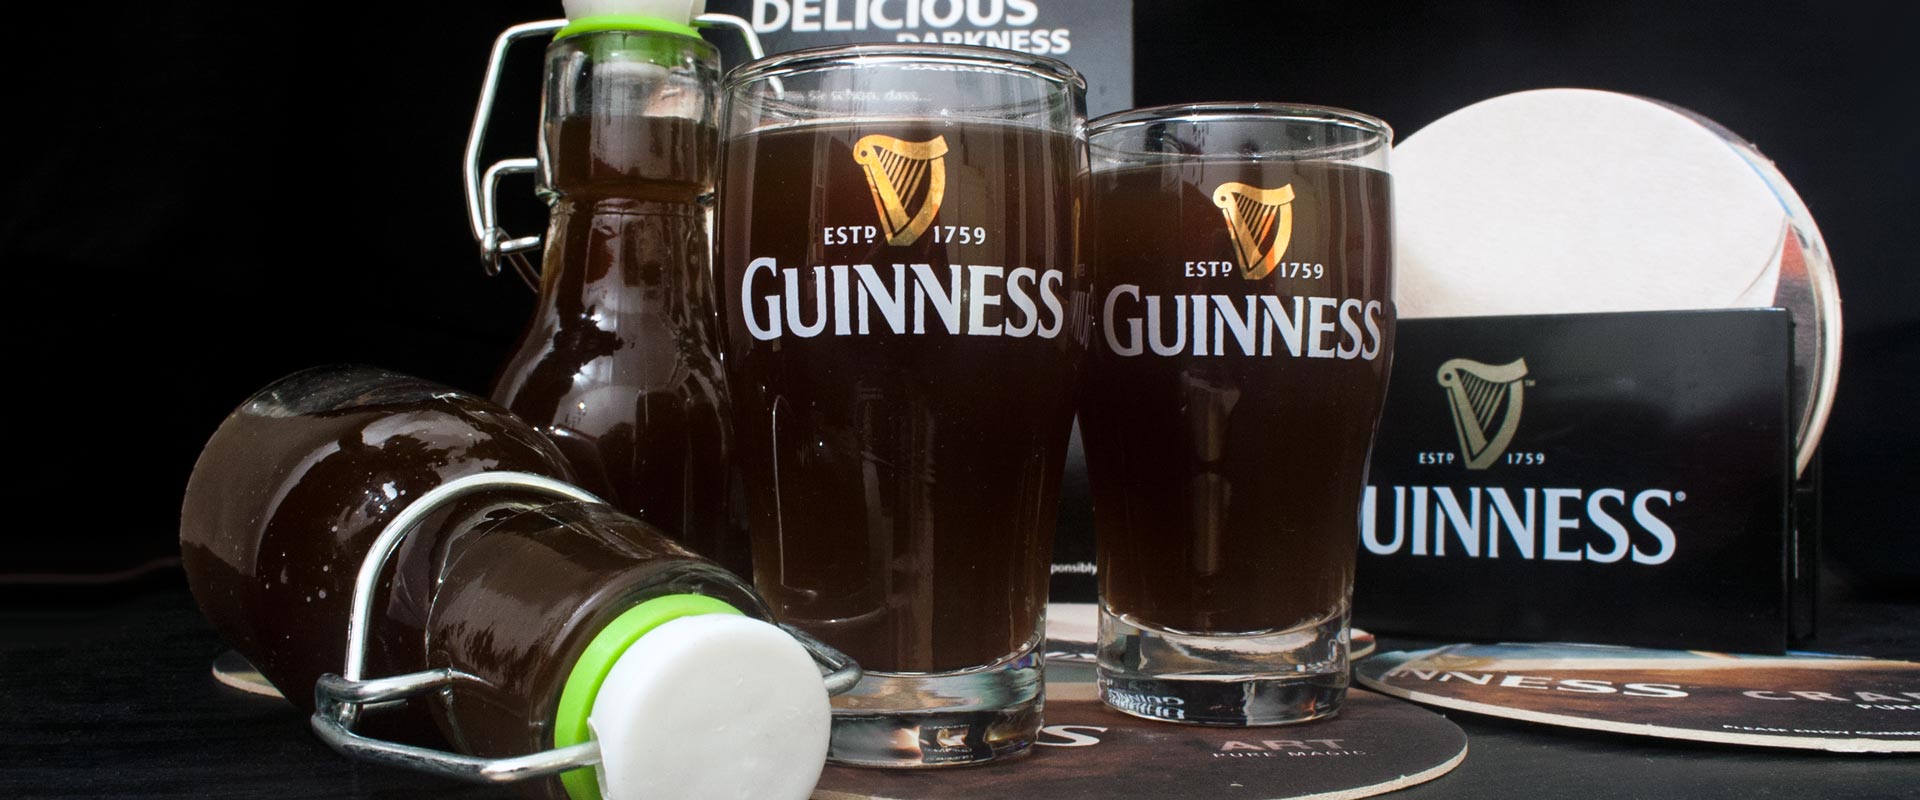 Guinness-Likör